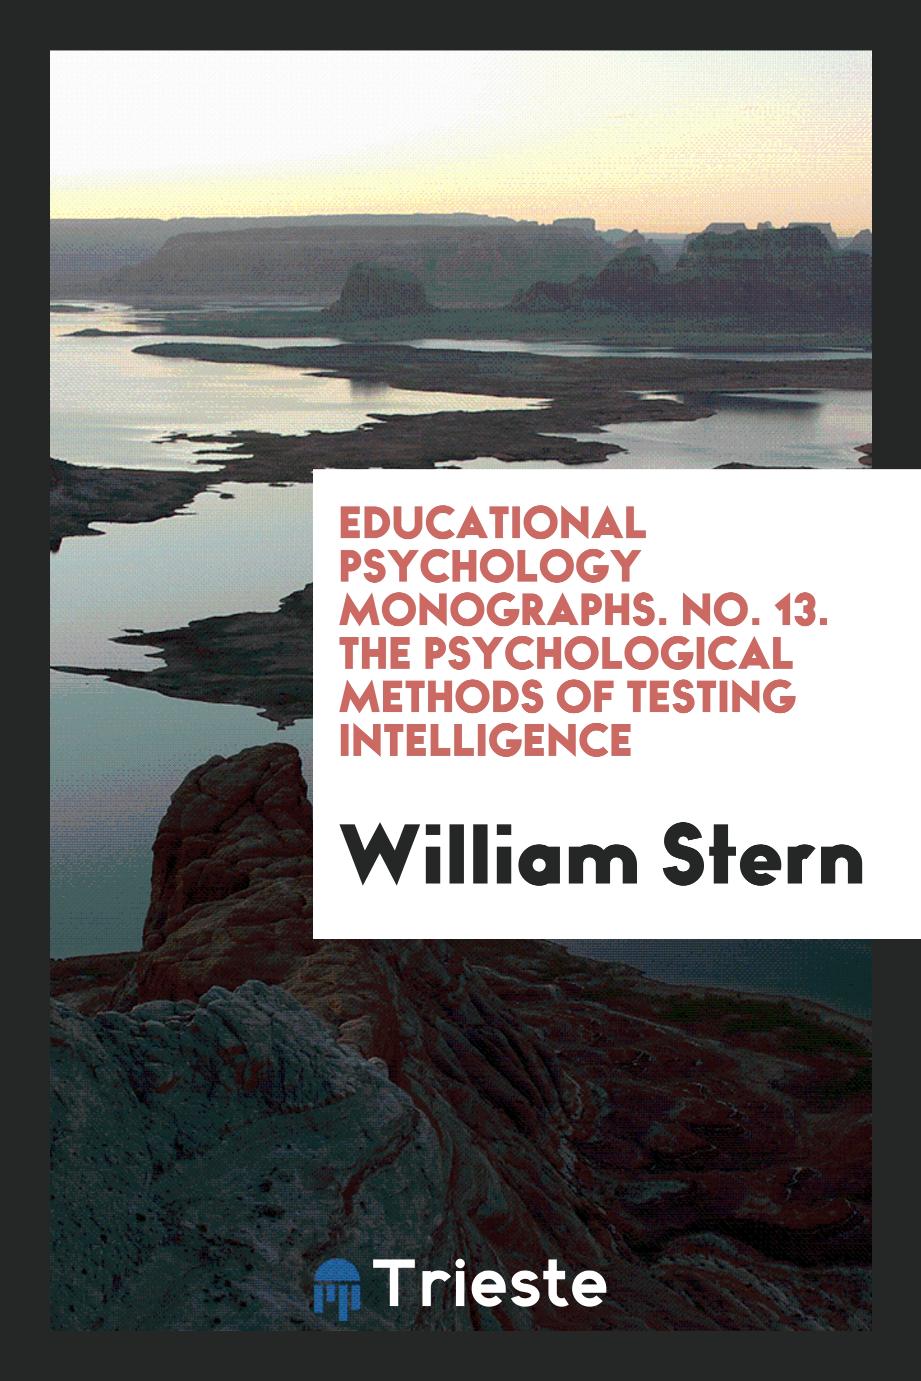 Educational Psychology Monographs. No. 13. The Psychological Methods of Testing Intelligence